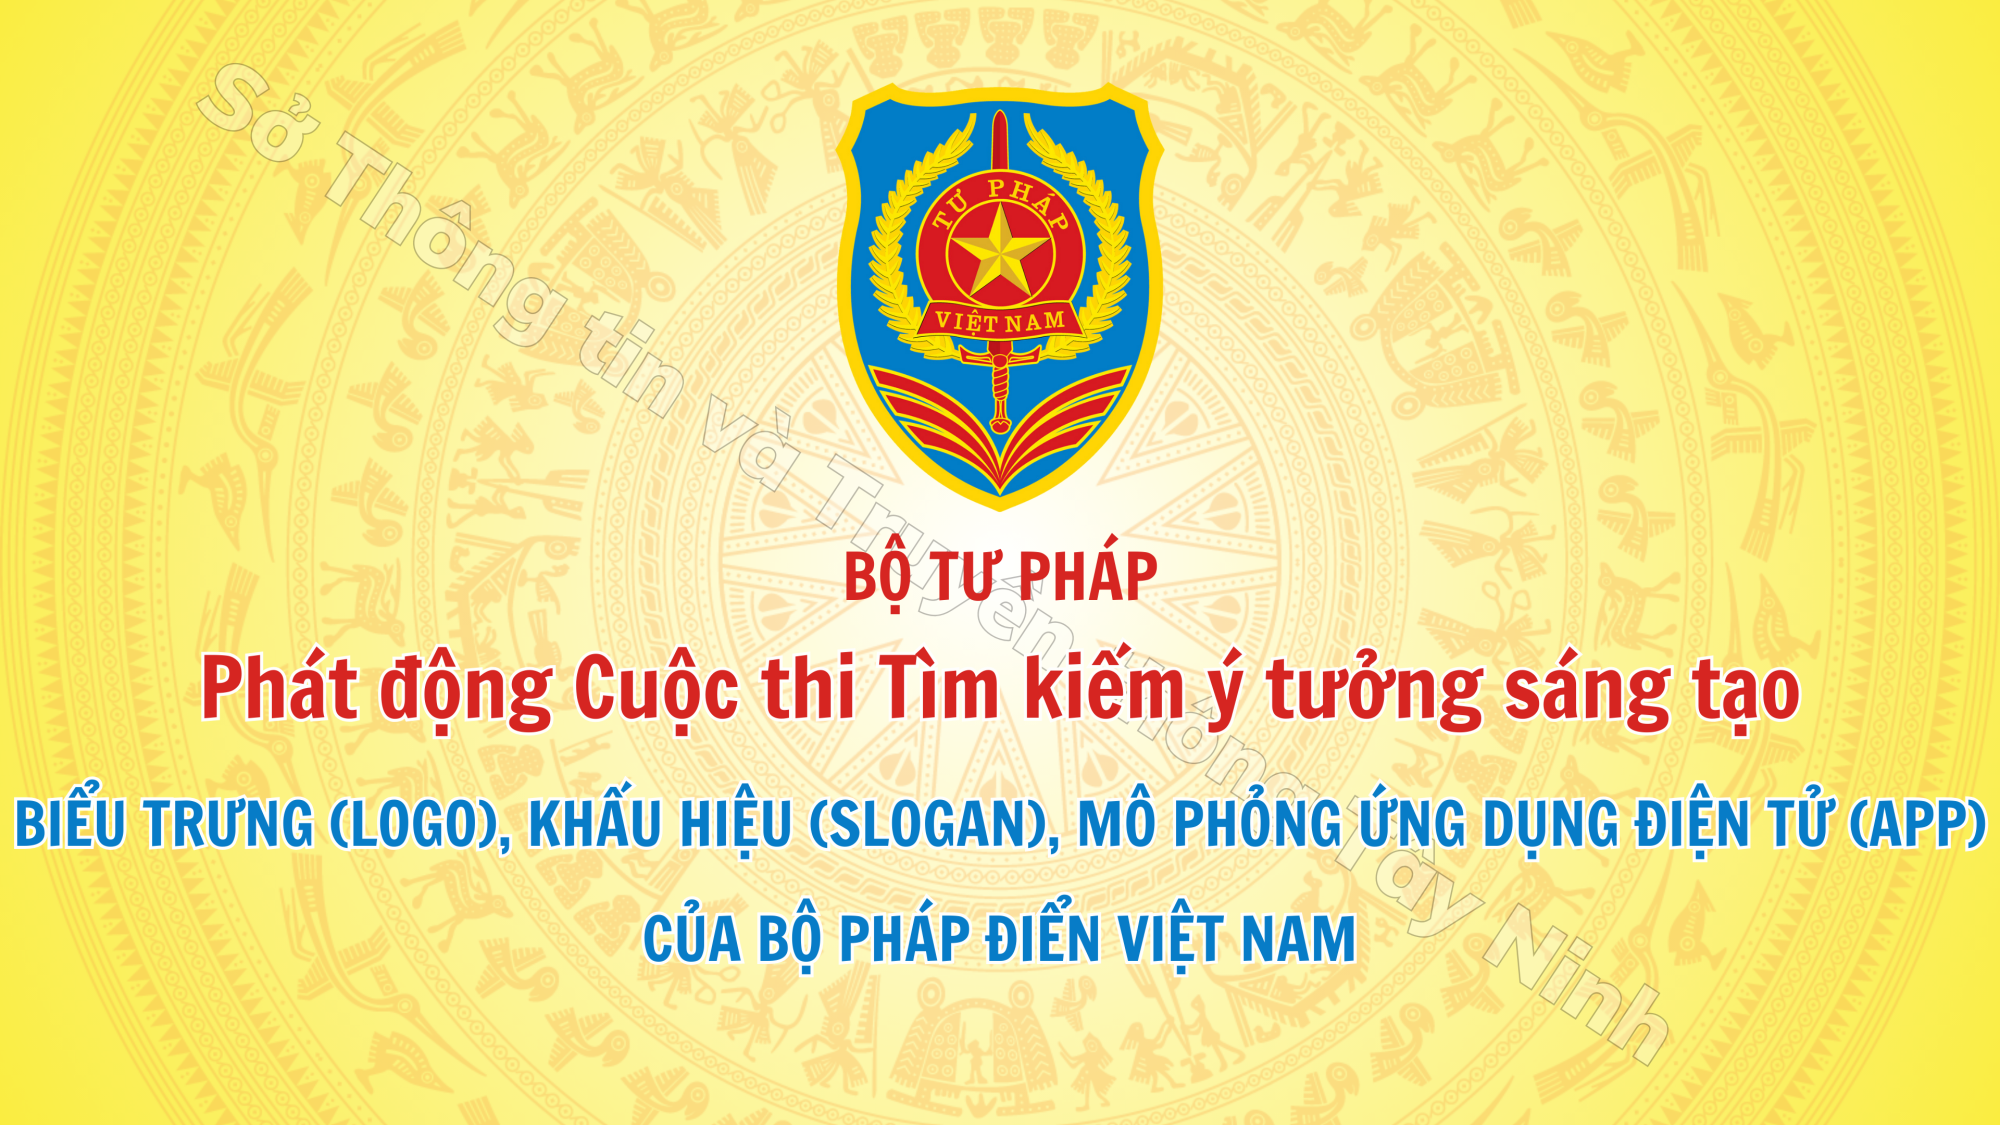 Cuộc thi tìm kiếm ý tưởng sáng tạo biểu trưng, khẩu hiệu, mô phỏng ứng dụng điện tử của Bộ pháp điển Việt Nam